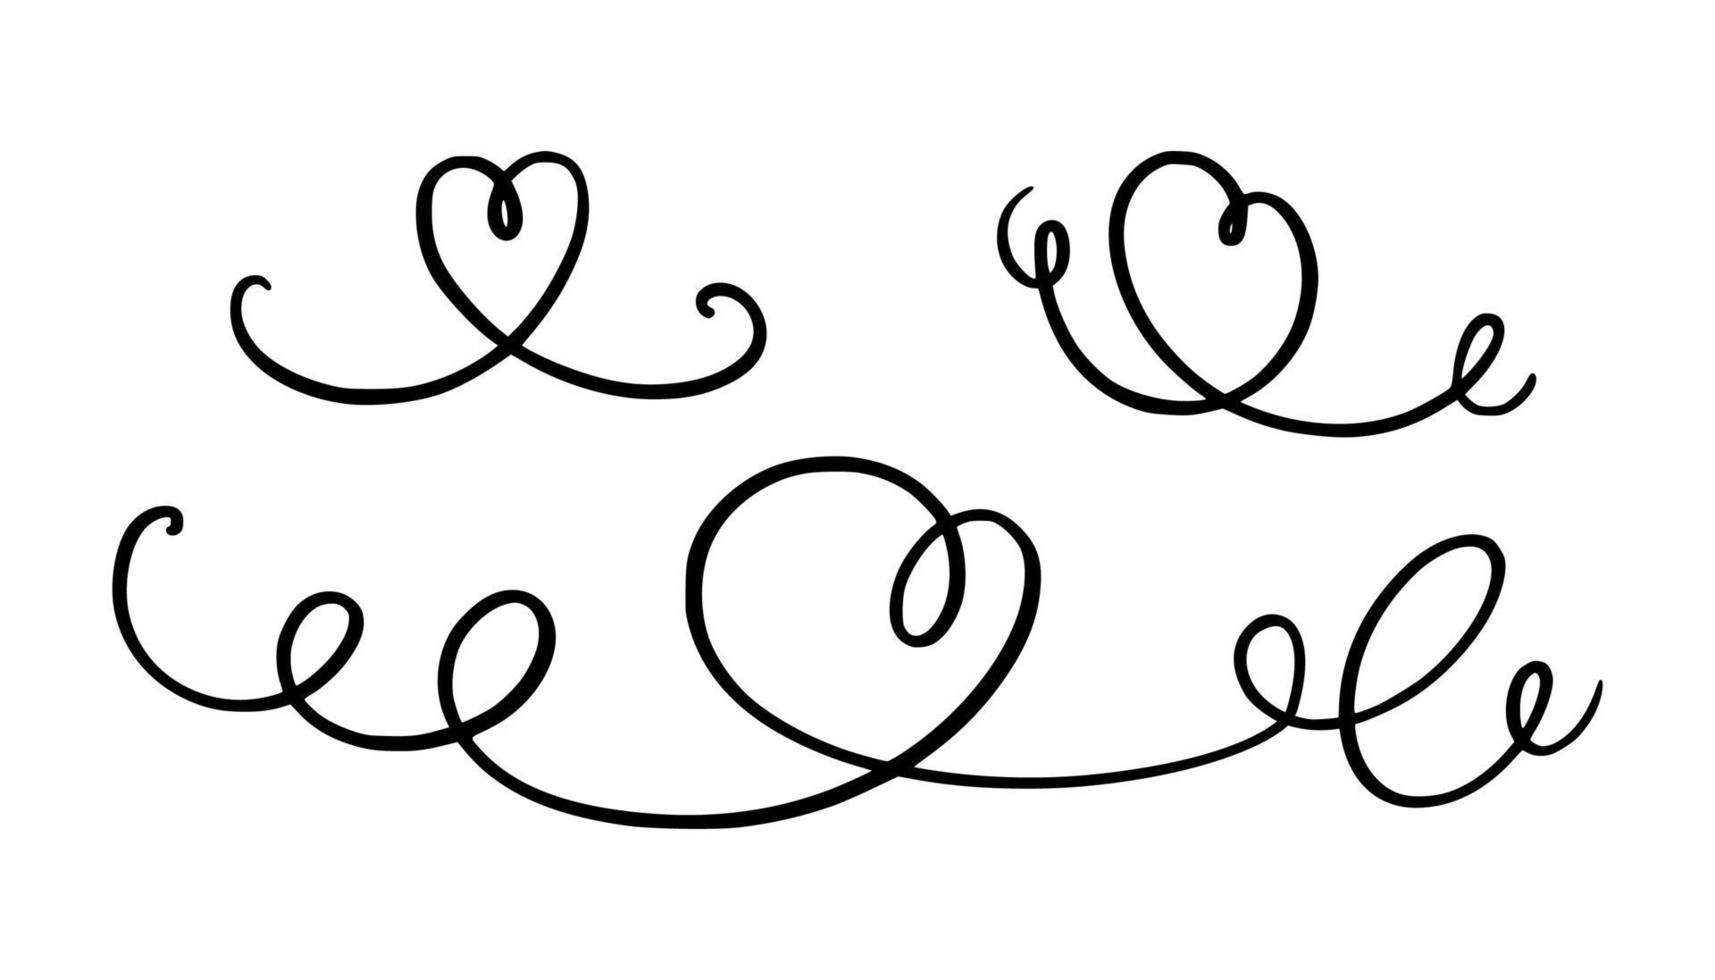 squiggle en kolken lijn met een hart. hand- getrokken kalligrafische wervelen. vector illustratie